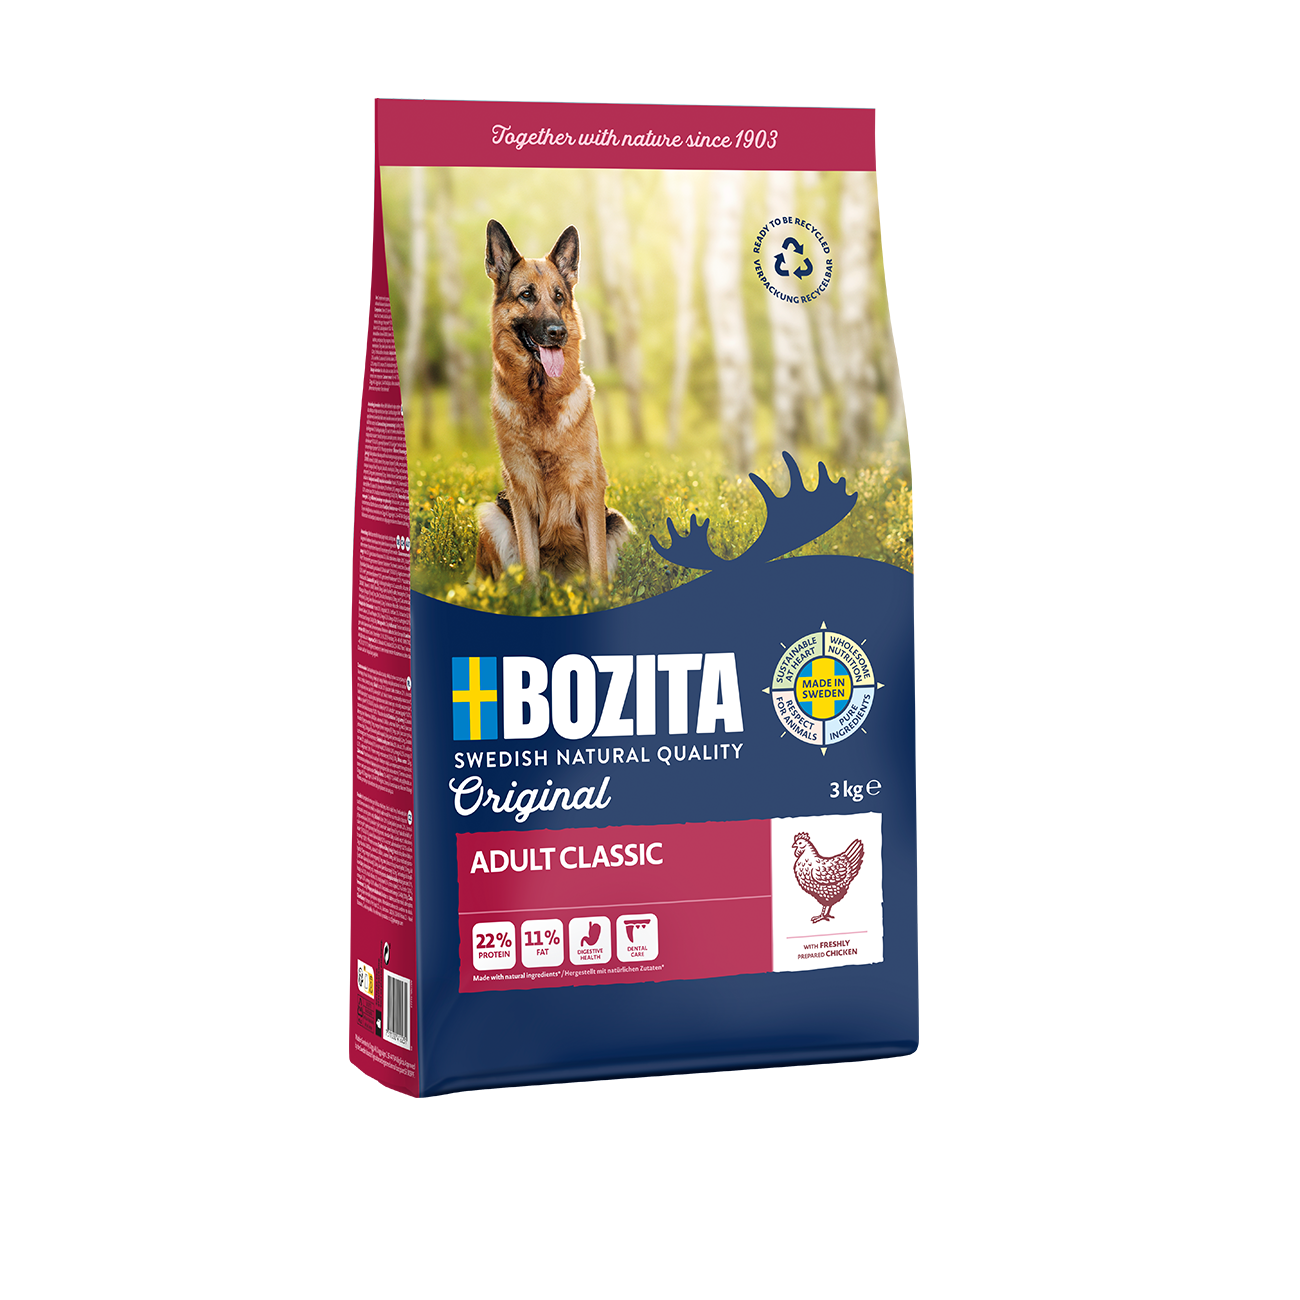 Bozita-Original-Adult-Classic